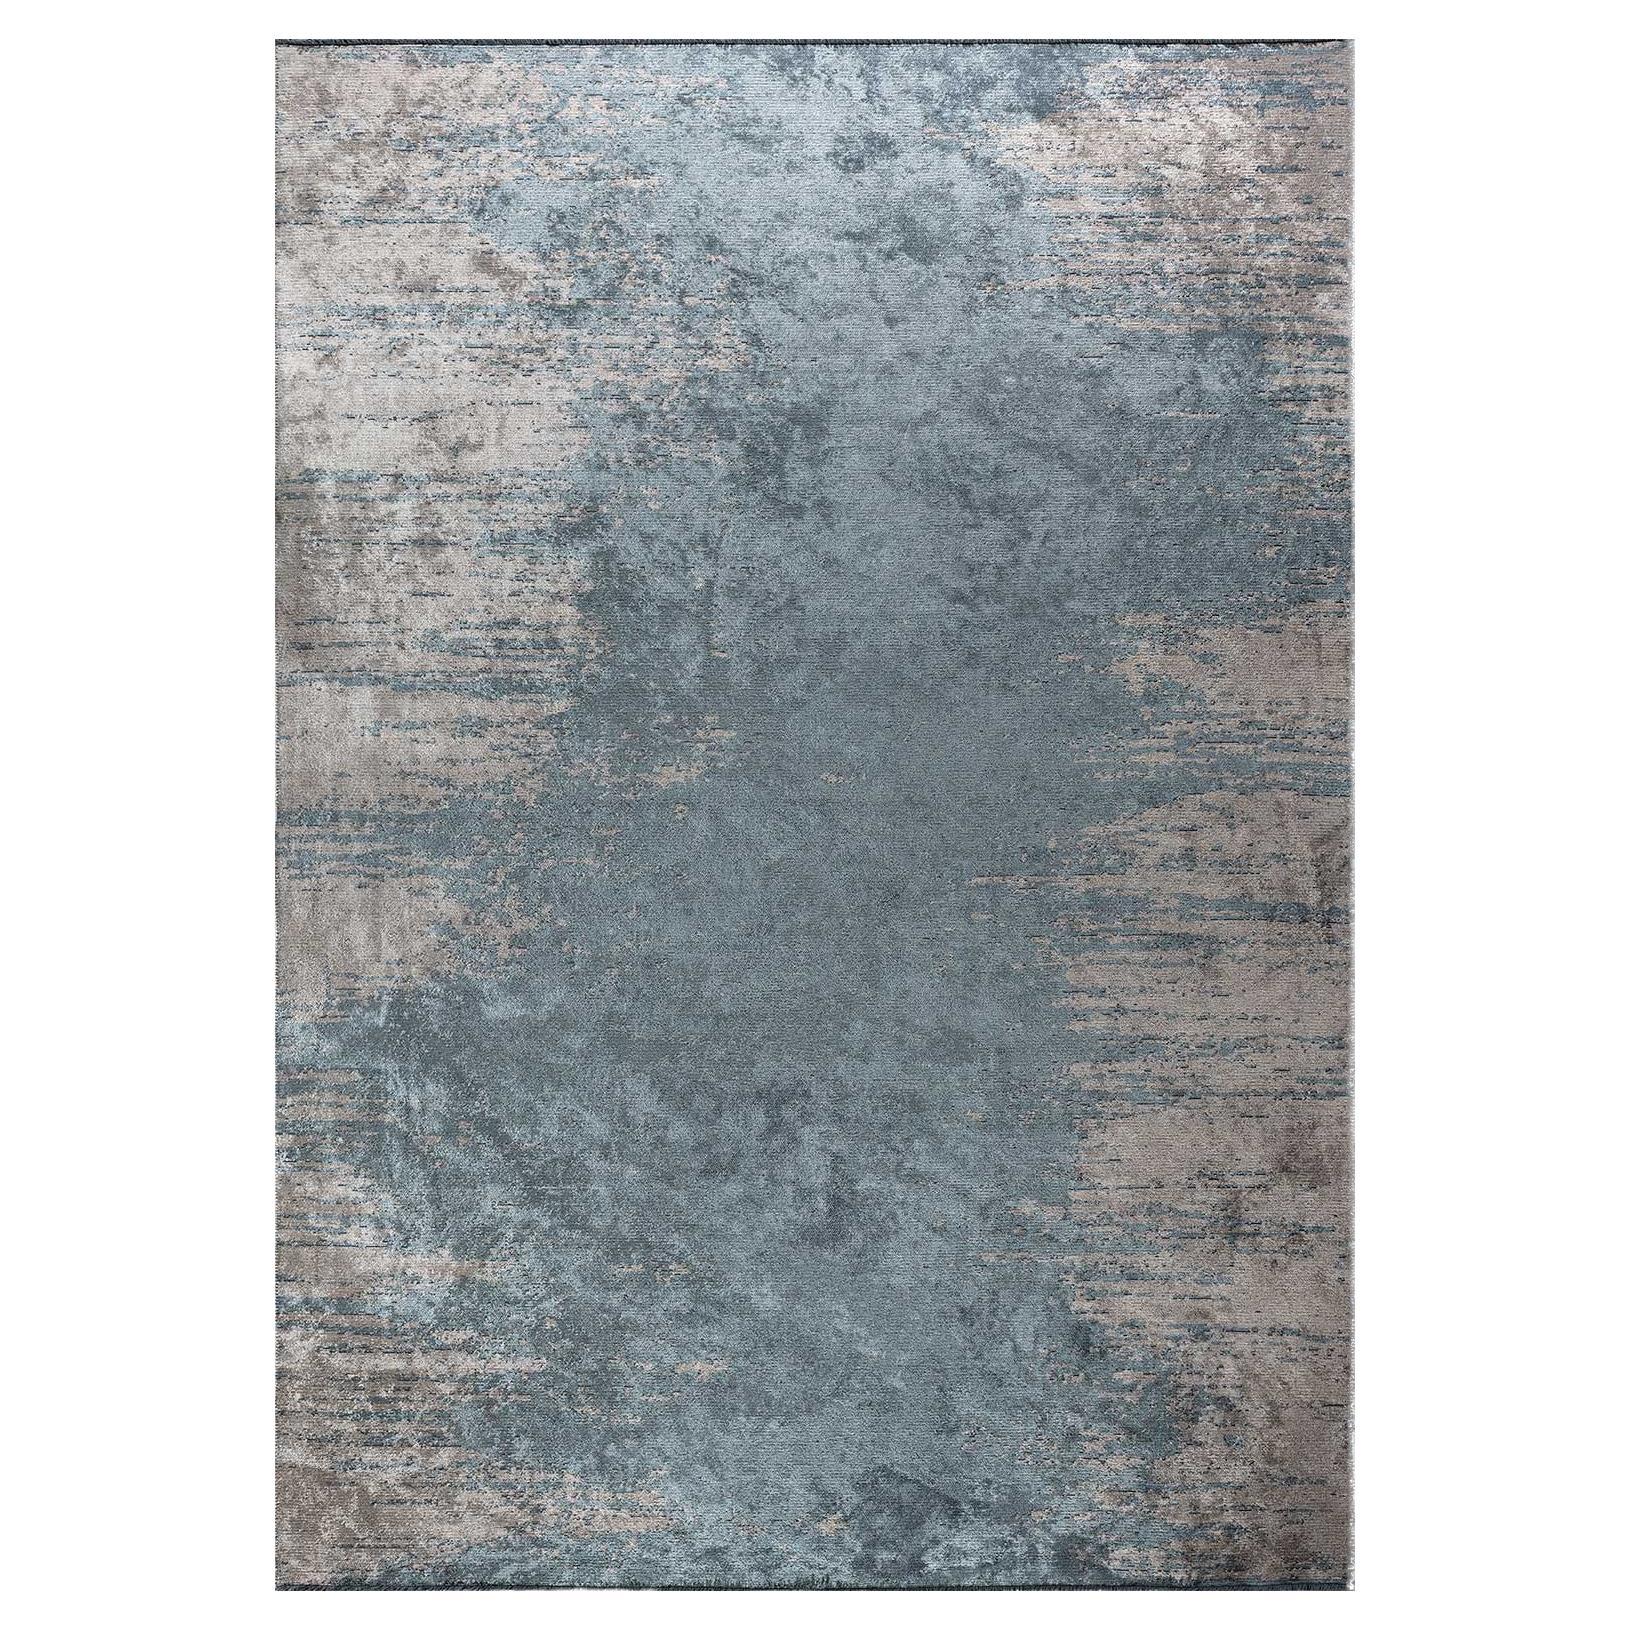 Tapis moderne en chenille bleu clair, grisâtre et crème abstrait sans frange, en stock